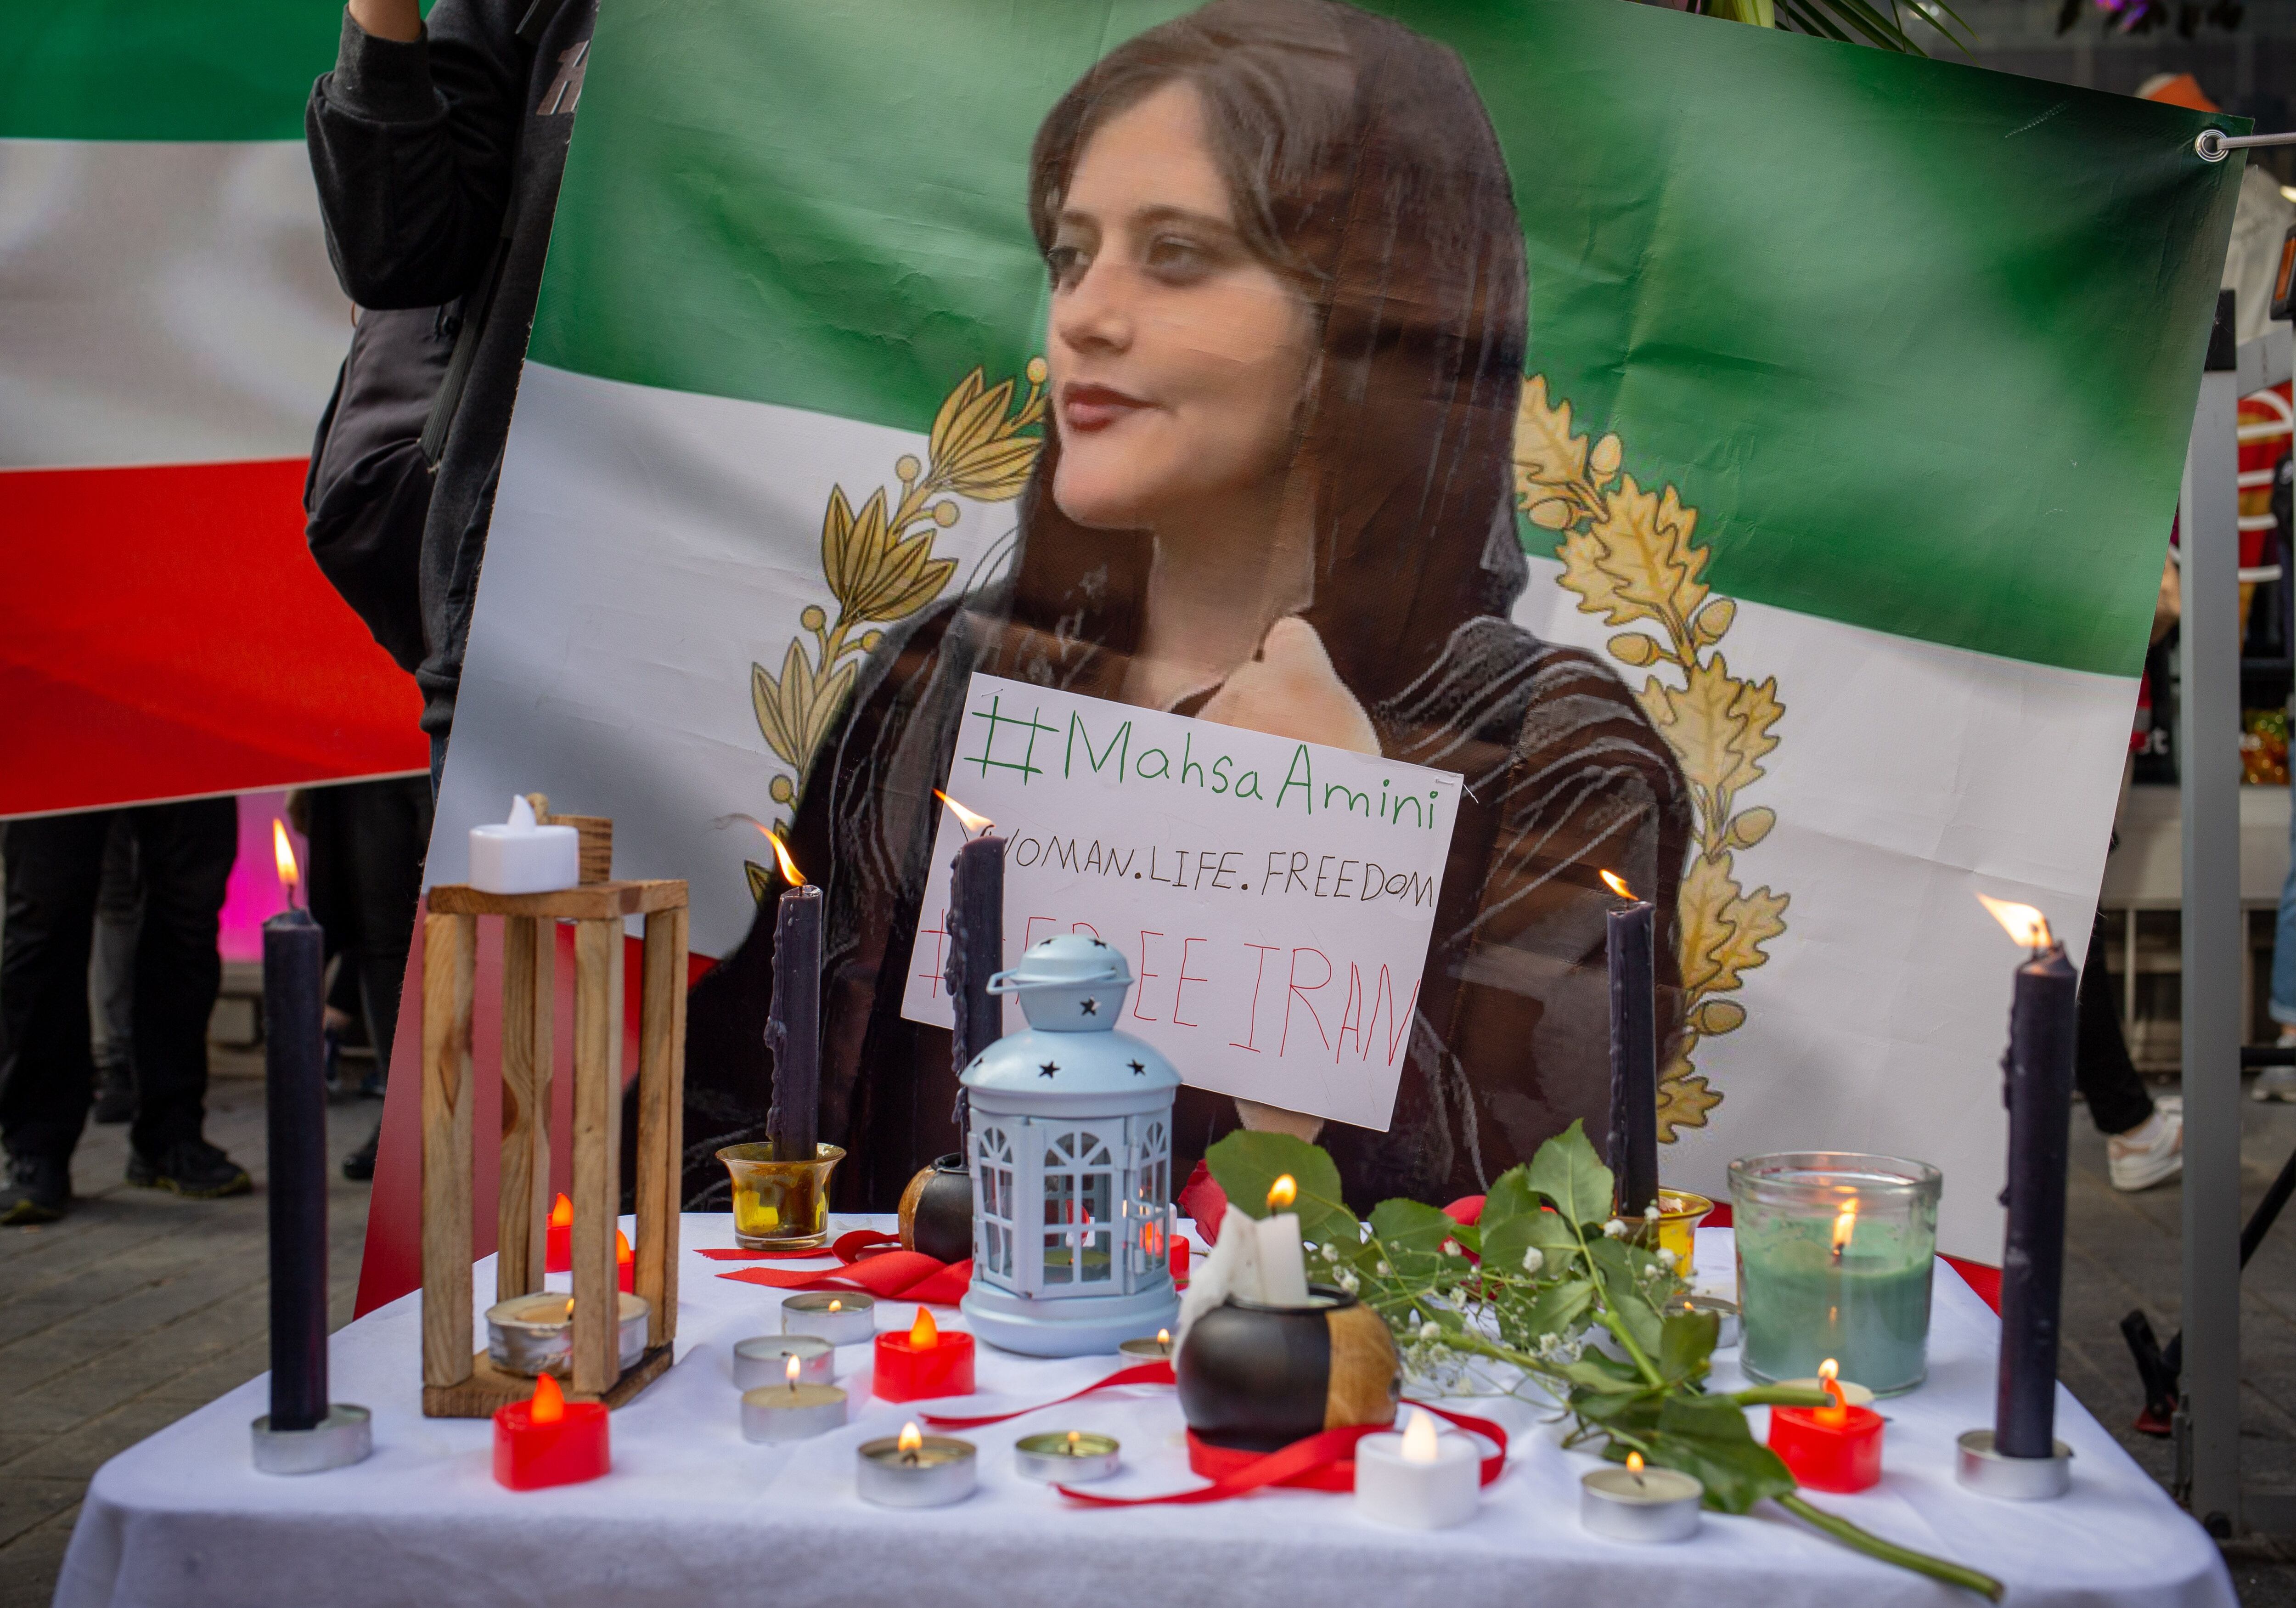 Protesta de ciudadanos iraníes frente al consulado de Irán en la ciudad de Estambul, en Turquía, por la muerte bajo custodia de Mahsa Amini, detenida en Teherán por supuestamente llevar mal puesto el velo. Europa Press/Contacto/Tolga Ildun
